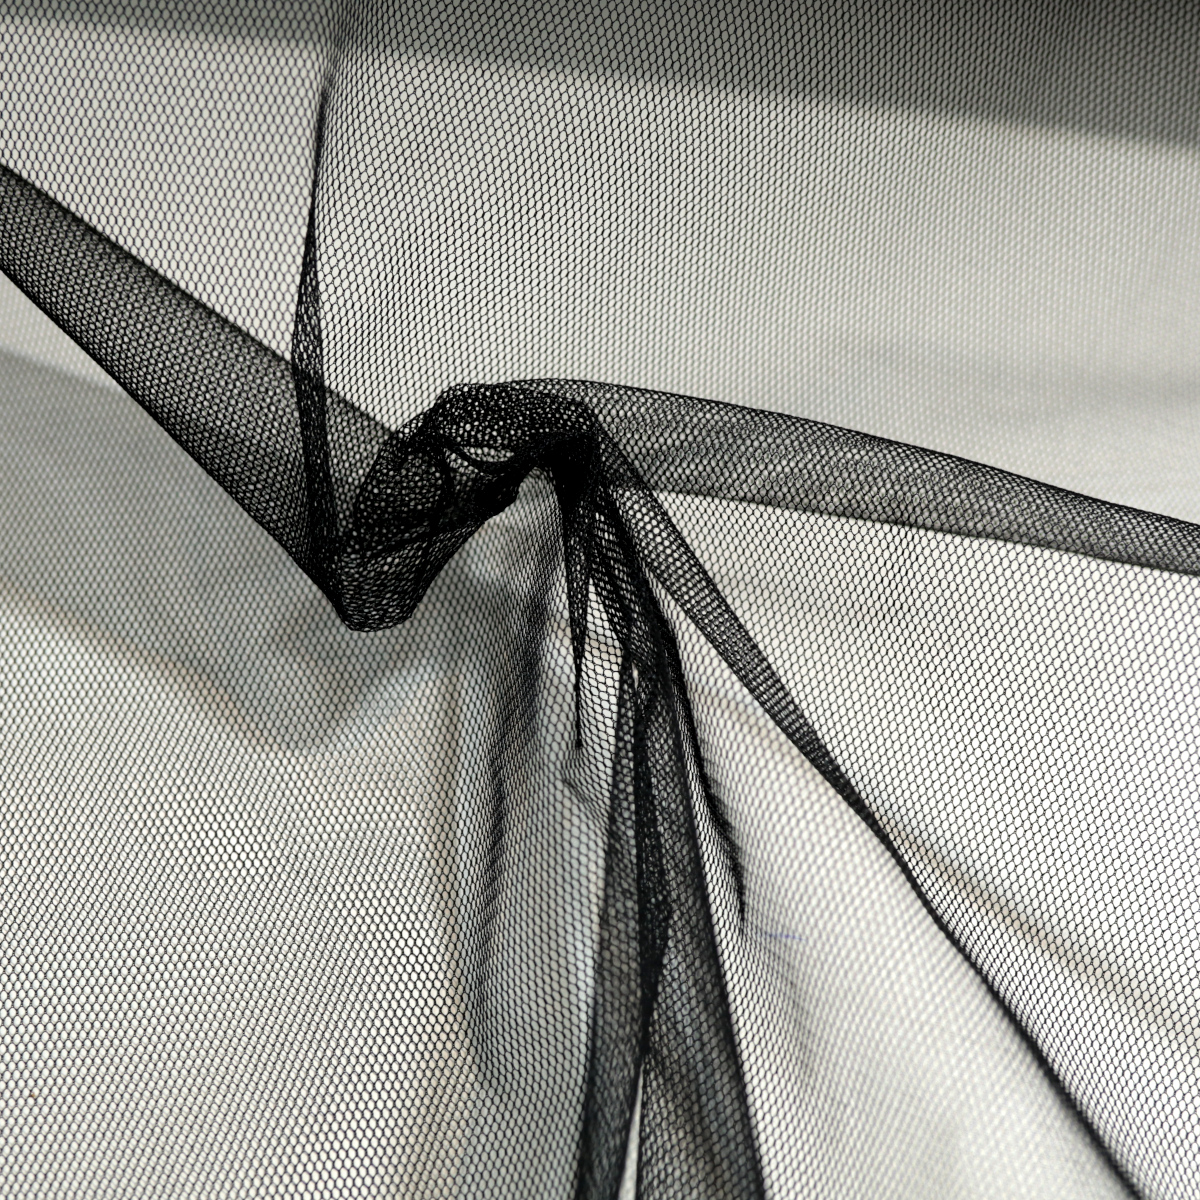 uni Tüllstoff Meterware 300cm breit für Gardine Vorhang Store Hochzeit - schwarz